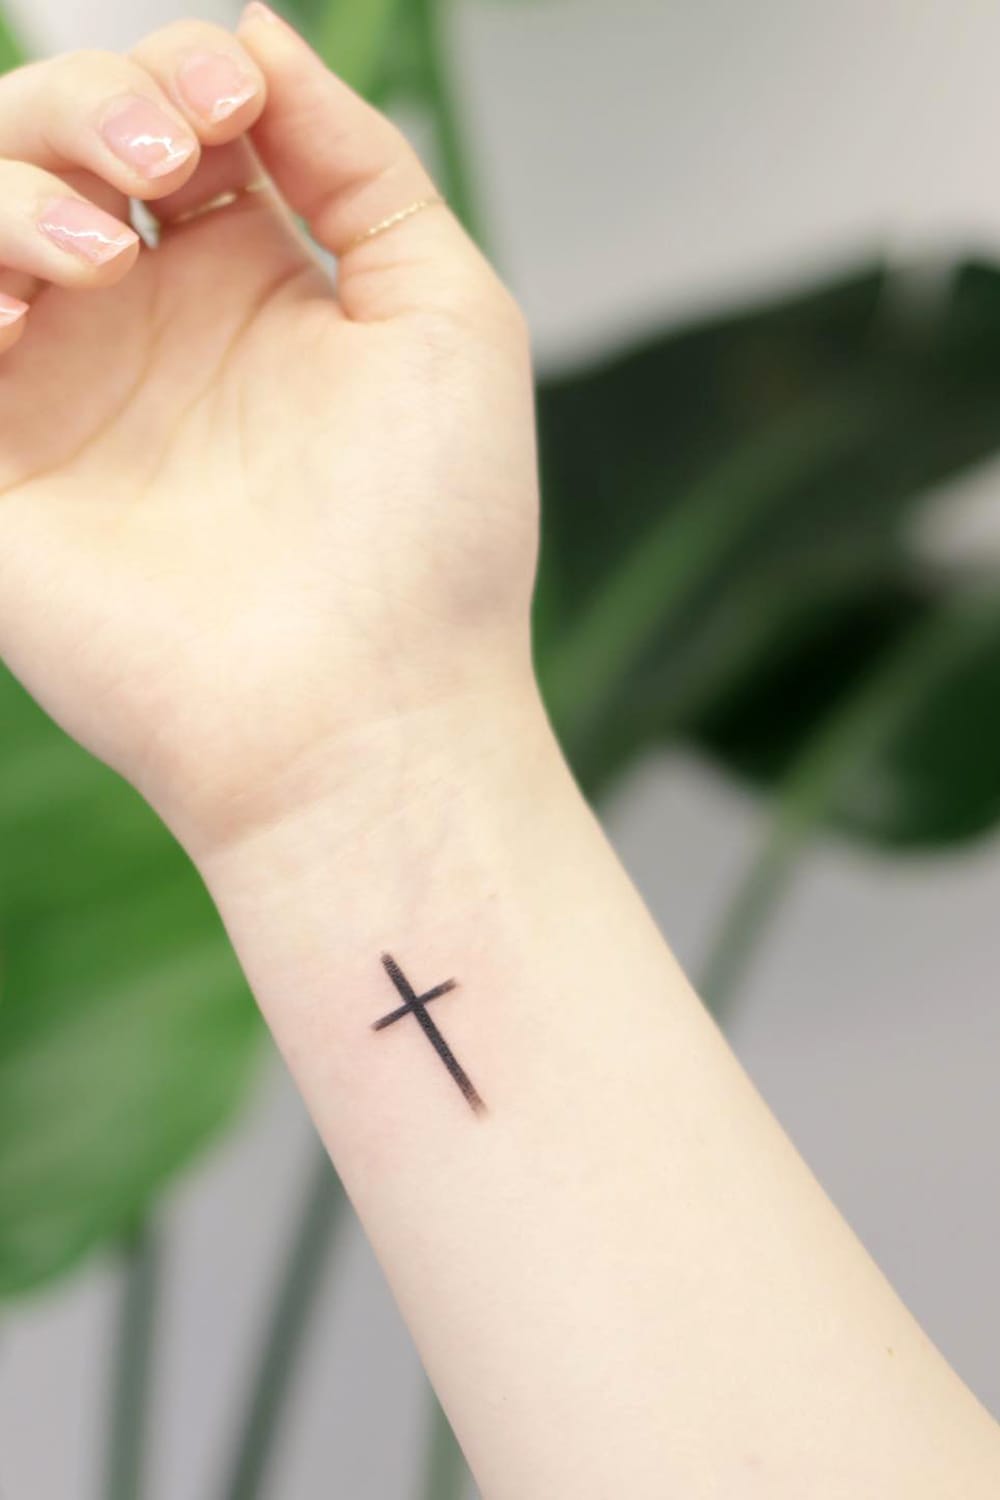 Small cross tattoo on wrist